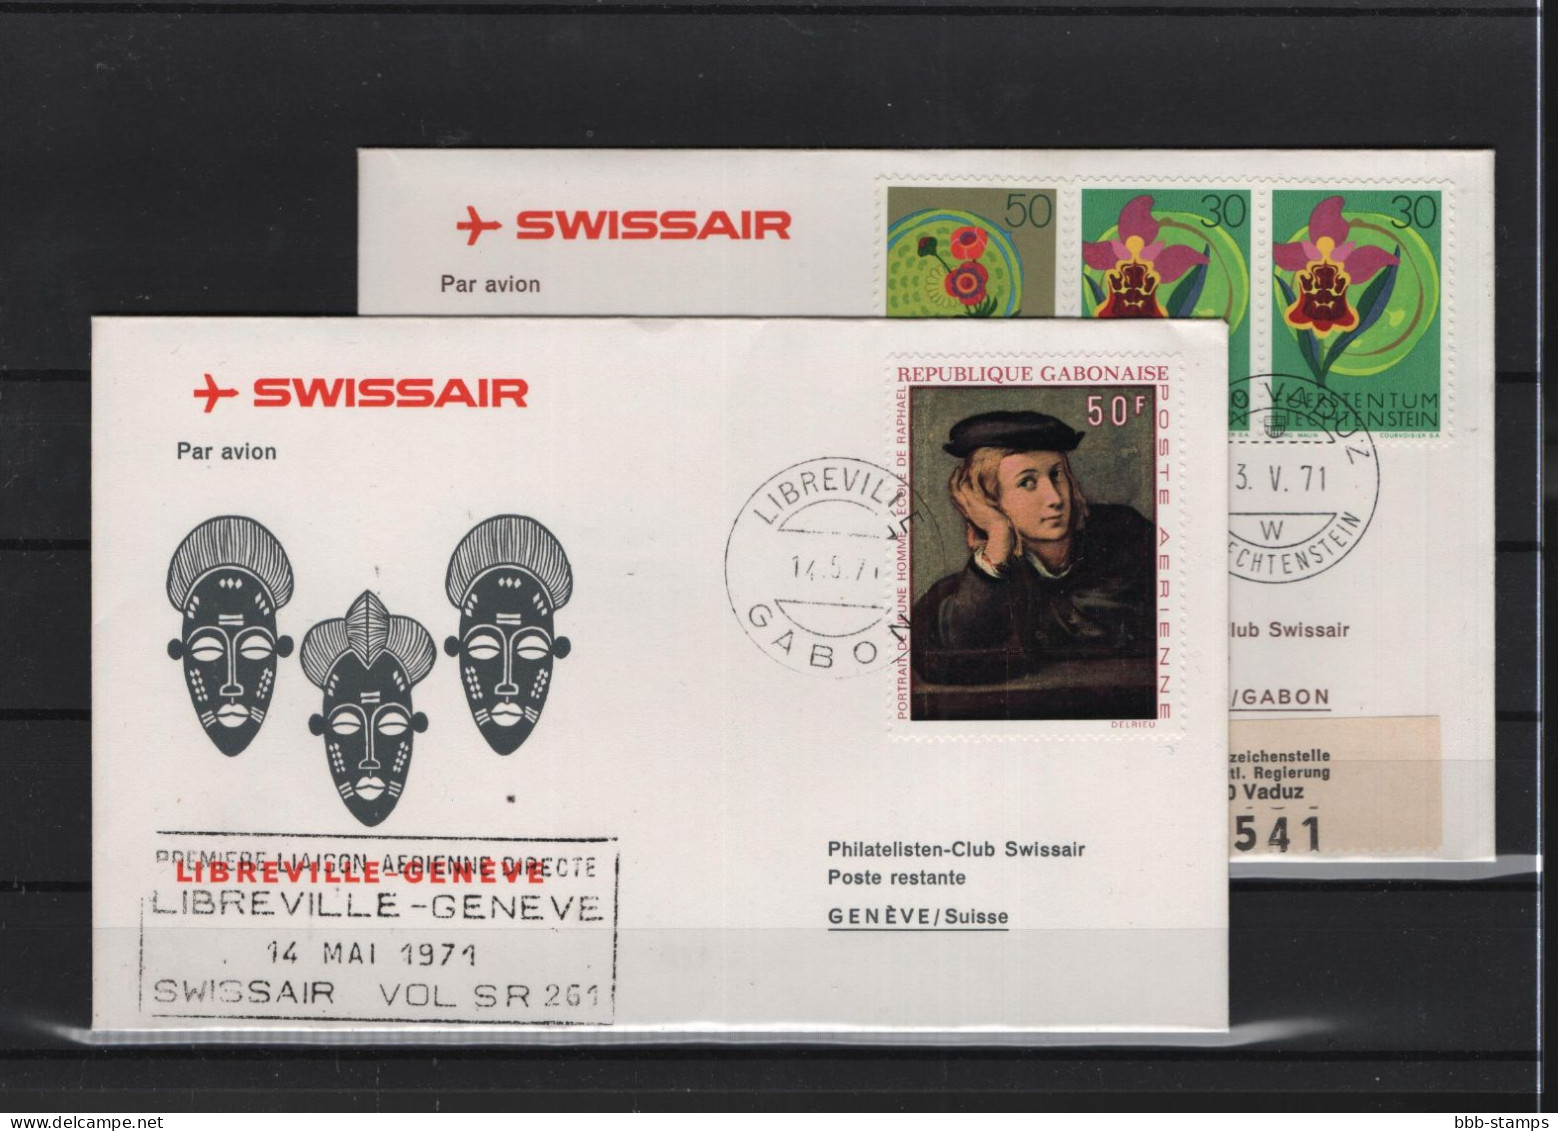 Schweiz Luftpost FFC Swissair 15.5.1971 Genf  Libreville VV - Erst- U. Sonderflugbriefe